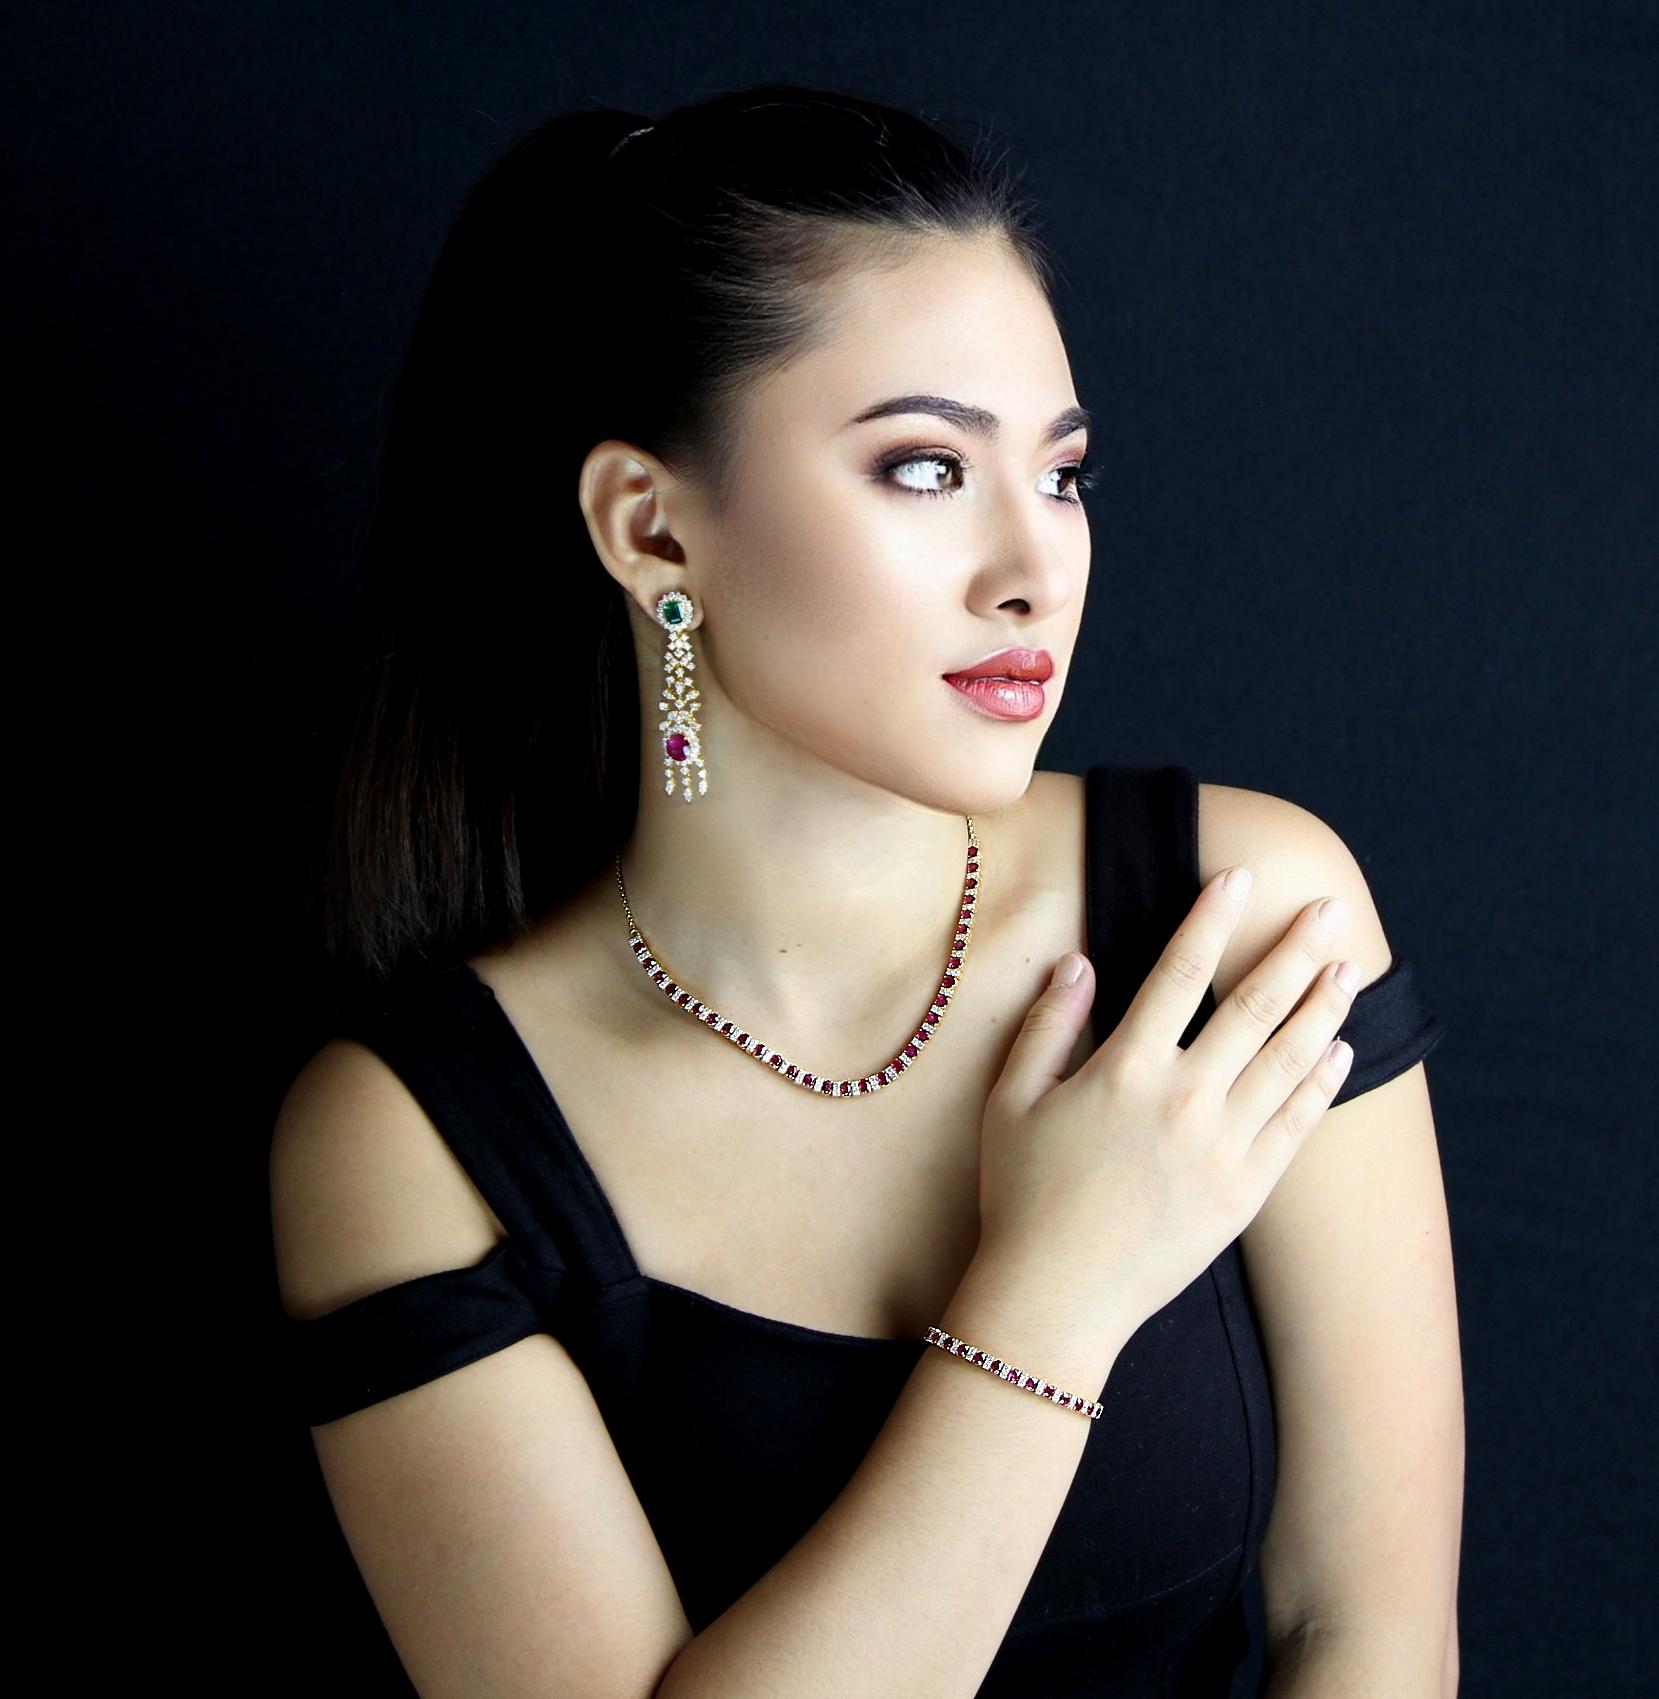 Dynamisches zweiteiliges Set aus Halskette und Armband.  Zertifizierte Halskette aus natürlichen burmesischen Rubinen und Diamanten mit einem abwechselnden, unendlichen Muster aus atemberaubenden, feuerroten Rubinen. Die Rubine werden sorgfältig